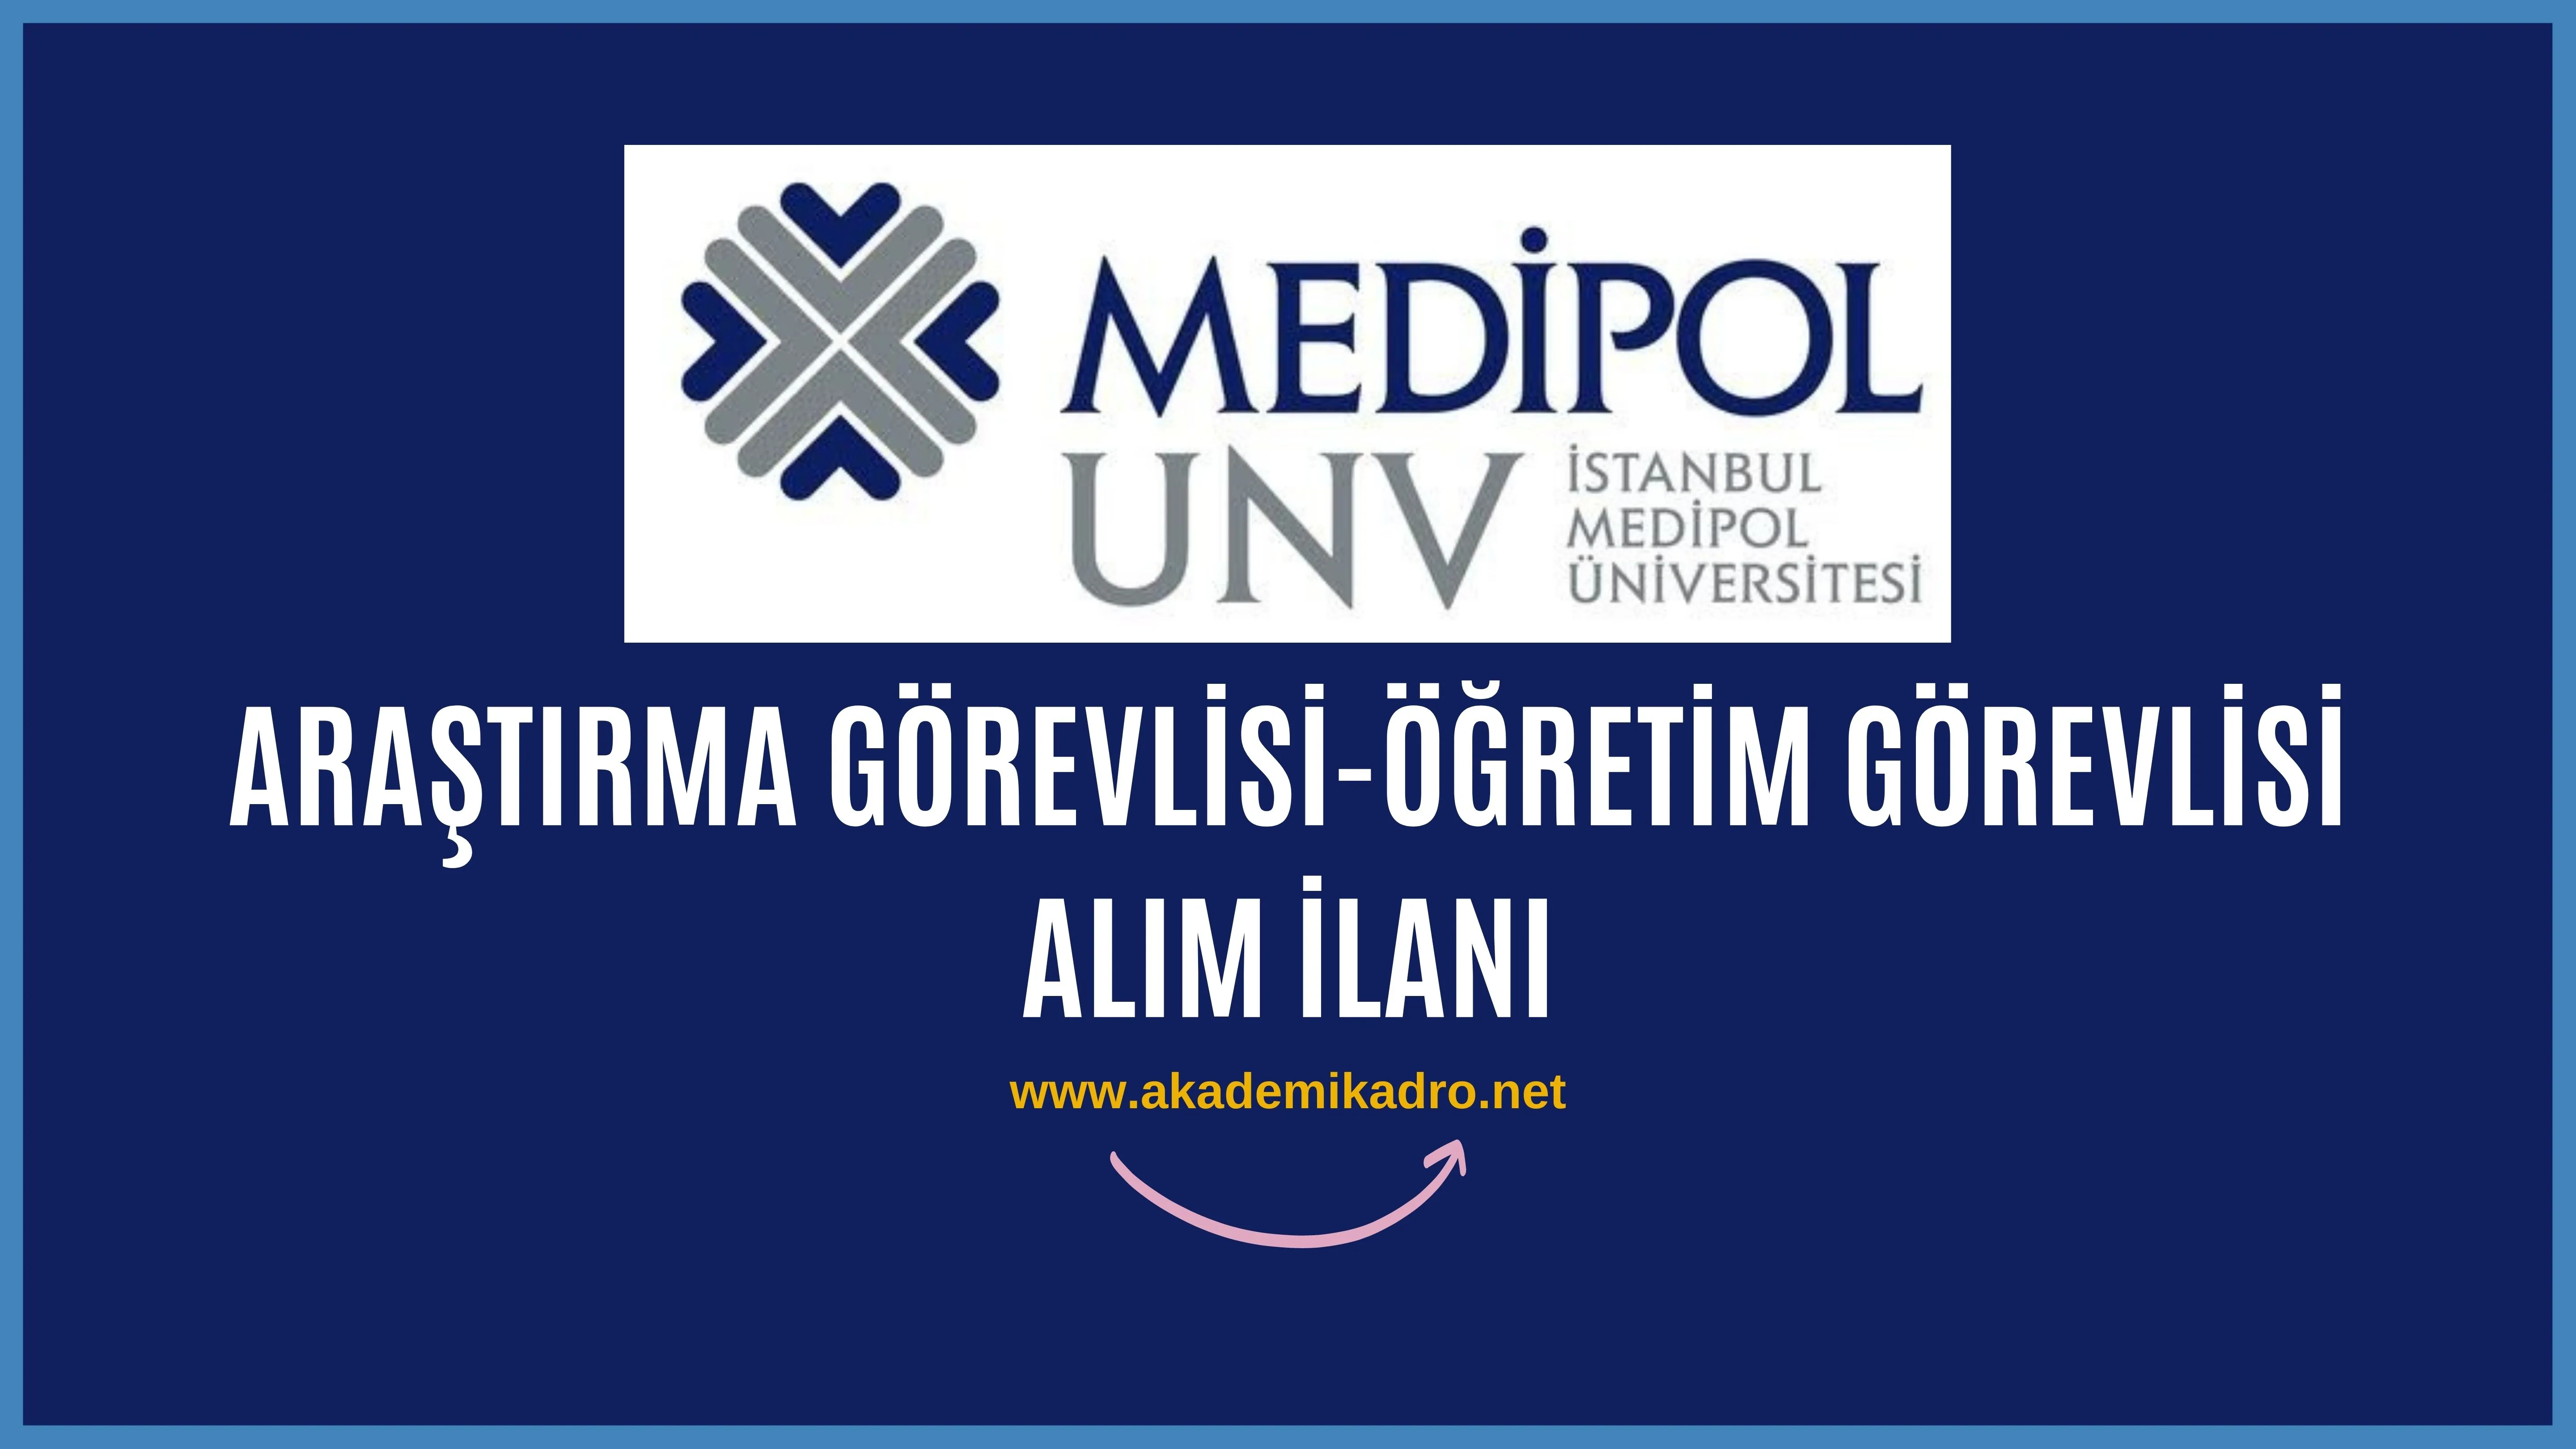 İstanbul Medipol Üniversitesi birçok alandan 23 Araştırma ve Öğretim görevlisi alacak. Son başvuru tarihi 16 Ocak 2023.